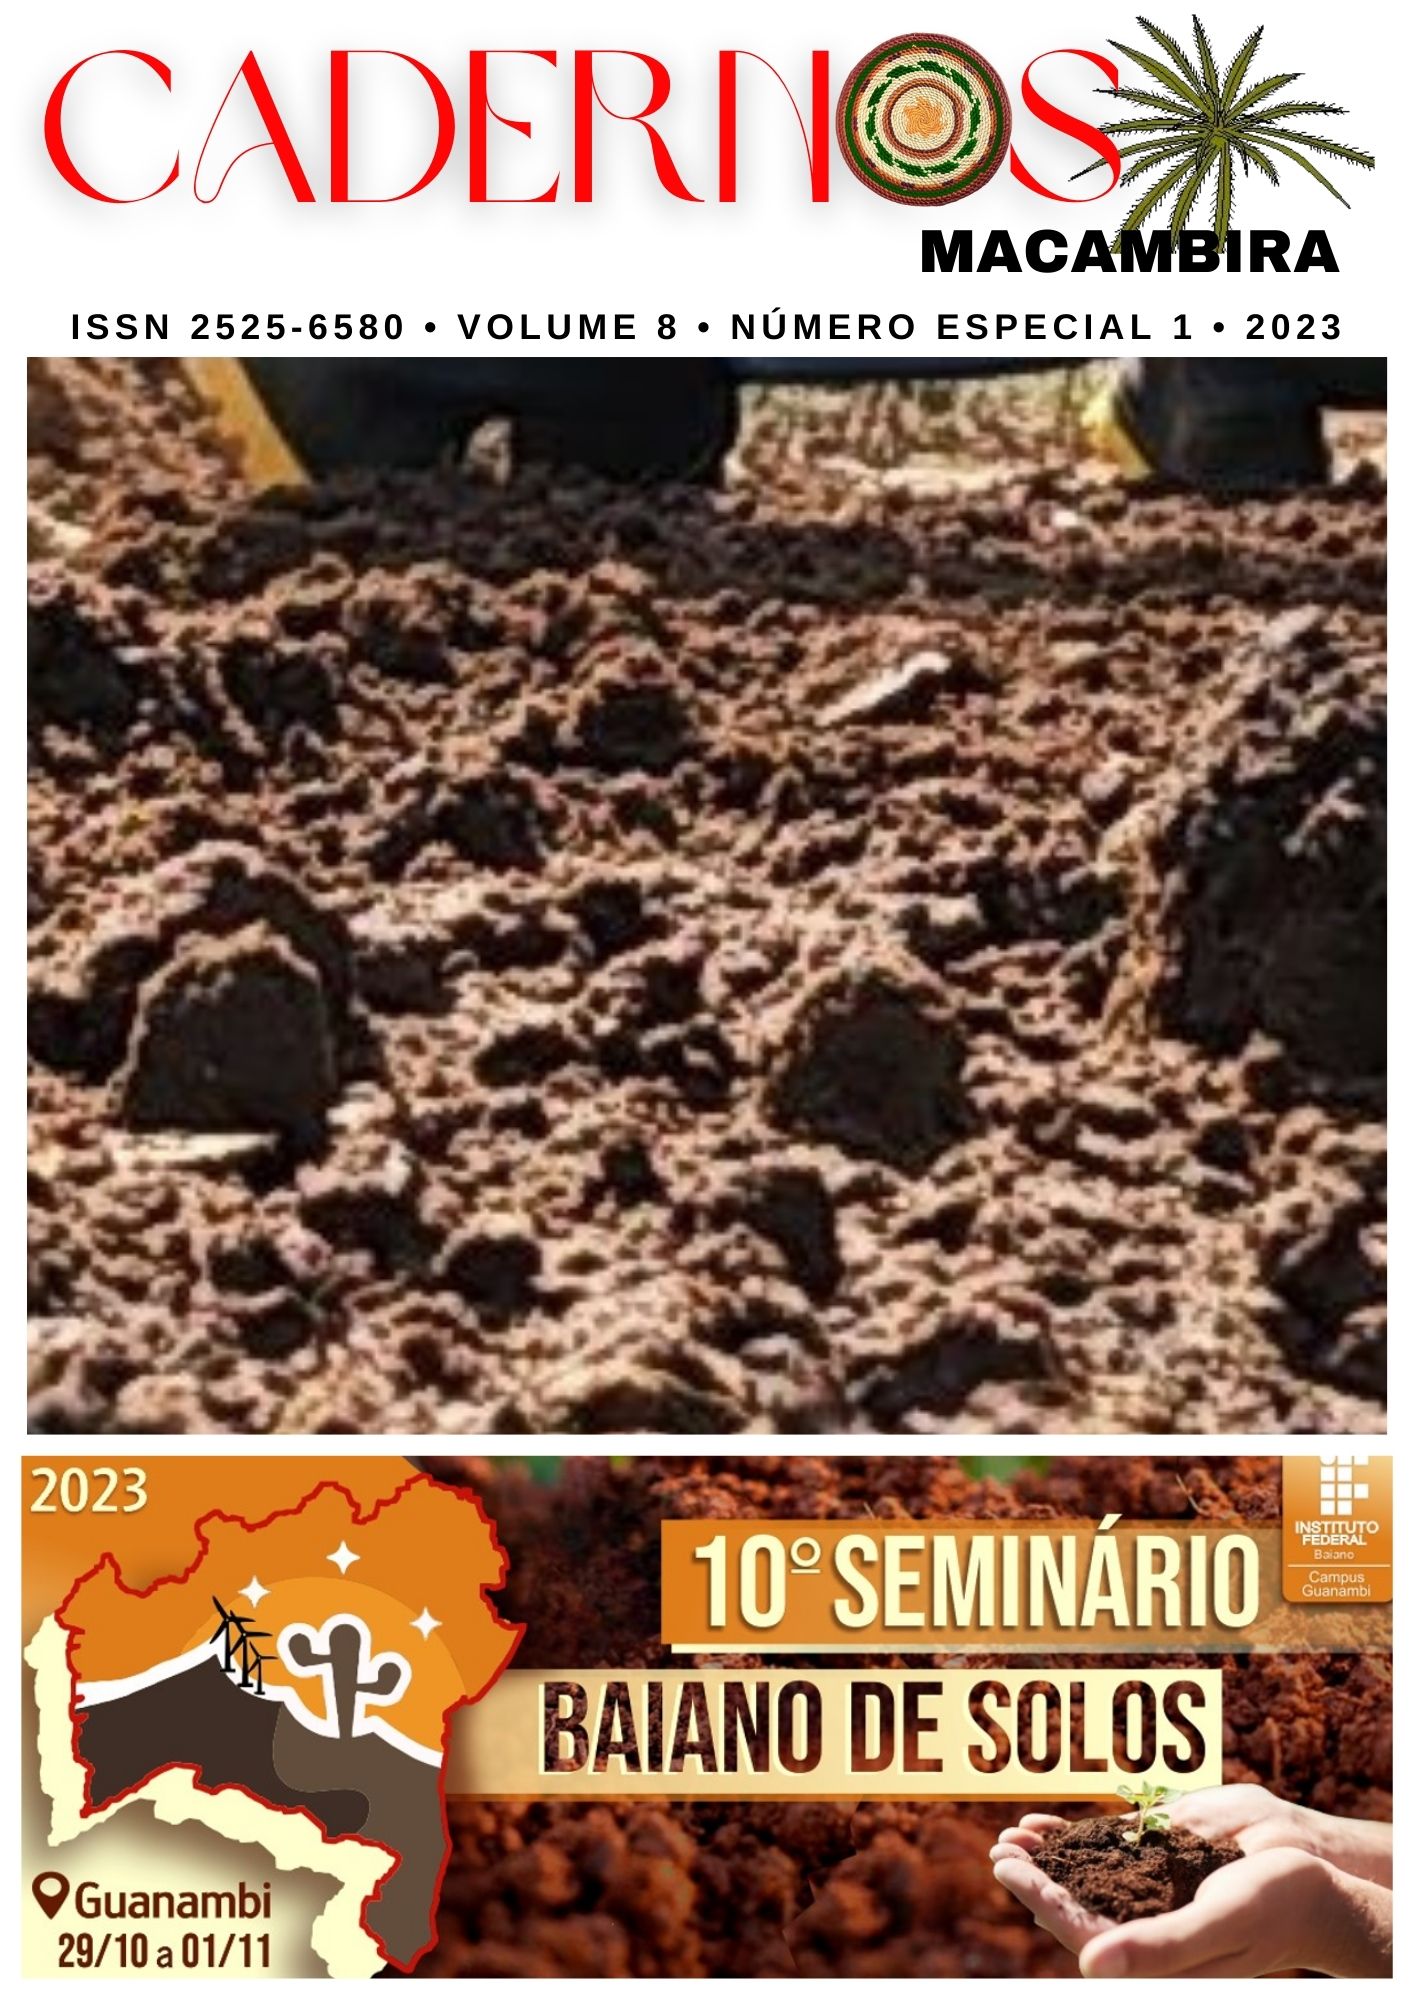 					View Vol. 8 No. especial2 (2023): Cadernos Macambira: Anais do 10º Seminário Baiano de Solos
				